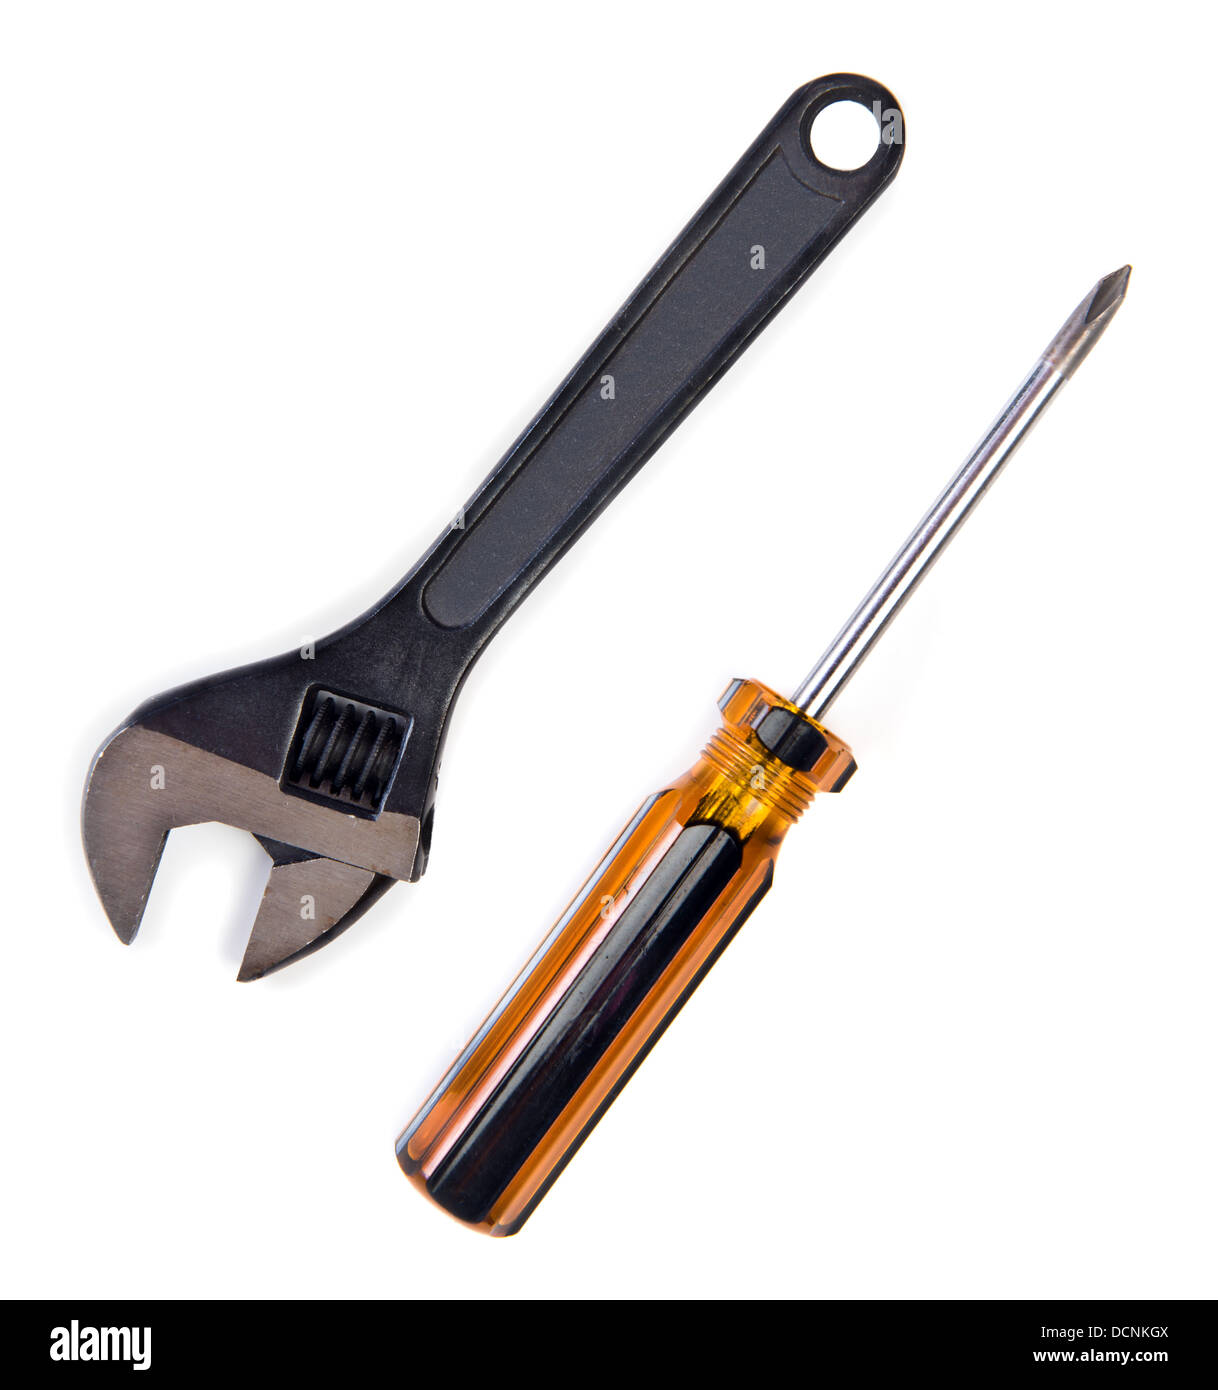 Chiave regolabile e un cacciavite tool kit isolato su bianco Foto Stock